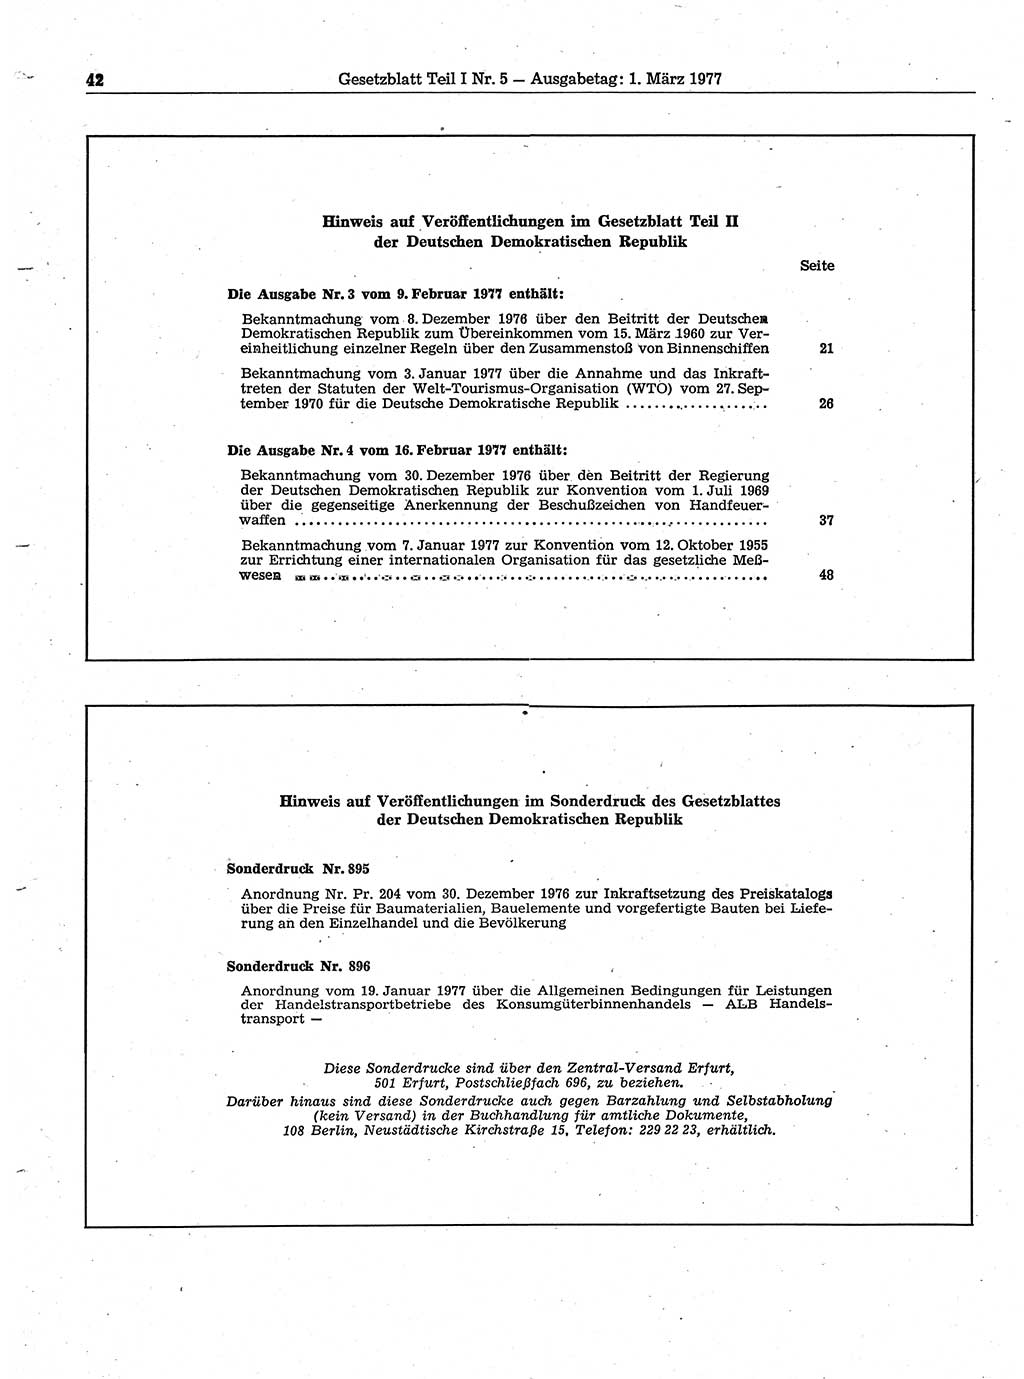 Gesetzblatt (GBl.) der Deutschen Demokratischen Republik (DDR) Teil Ⅰ 1977, Seite 42 (GBl. DDR Ⅰ 1977, S. 42)